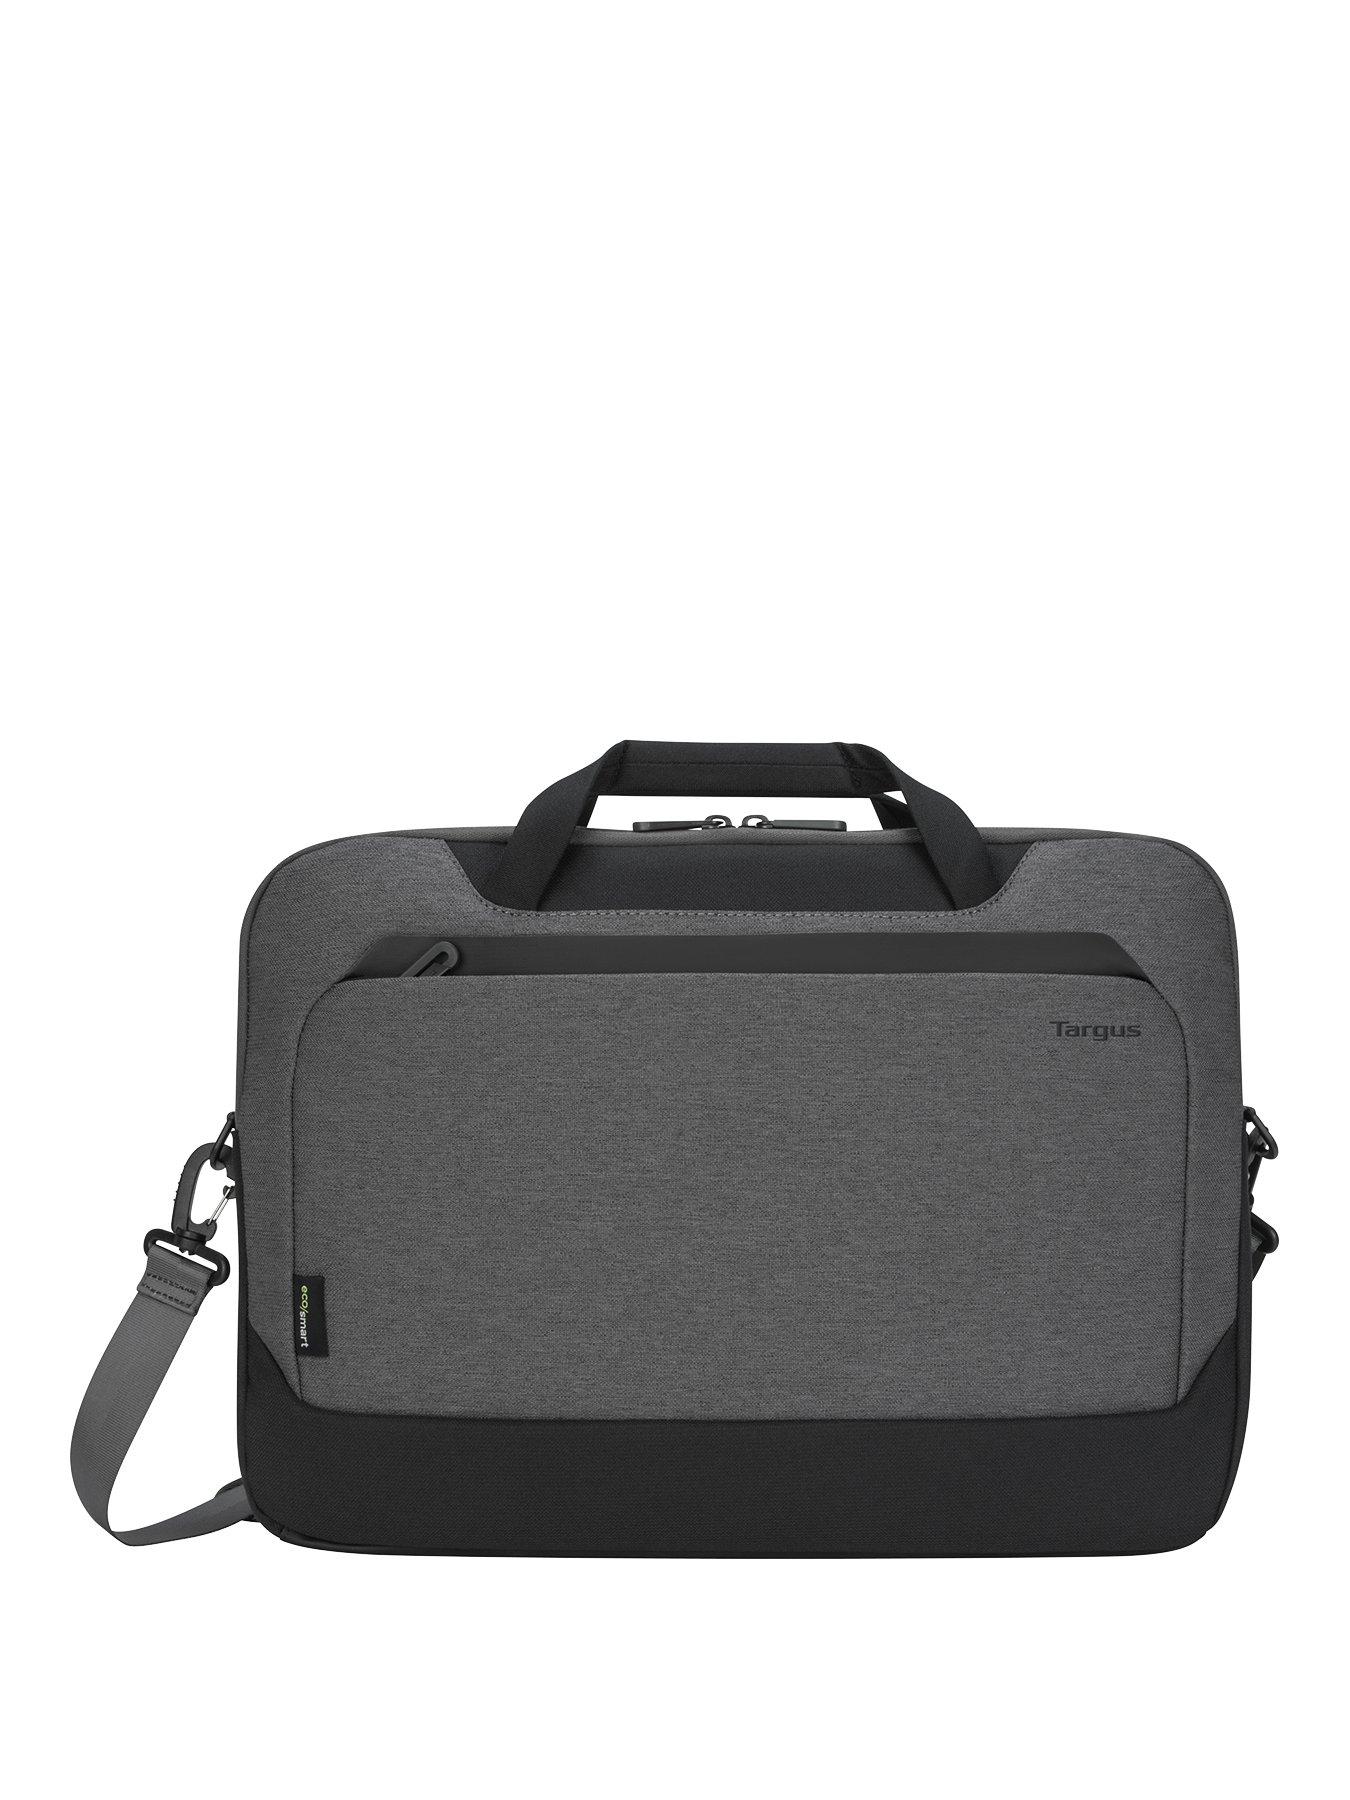 Blippi Laptop Bag Briefcase Messenger Shoulder Bag for Men Women Laptop Case